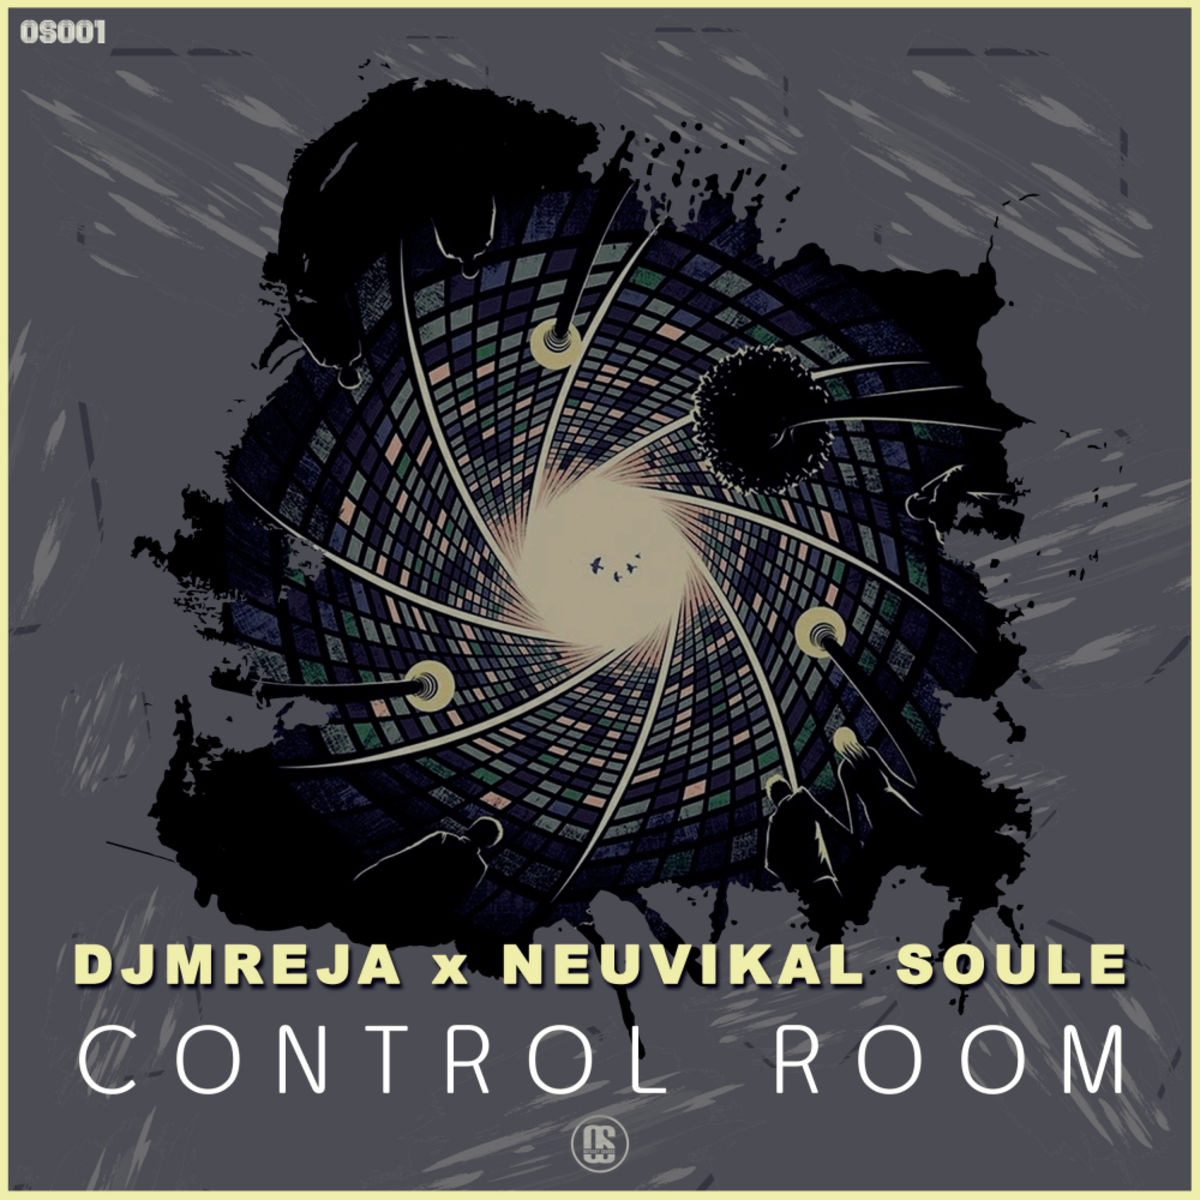 DJMReja + Neuvikal soule - Infinite Creation / Odyssey Sounds